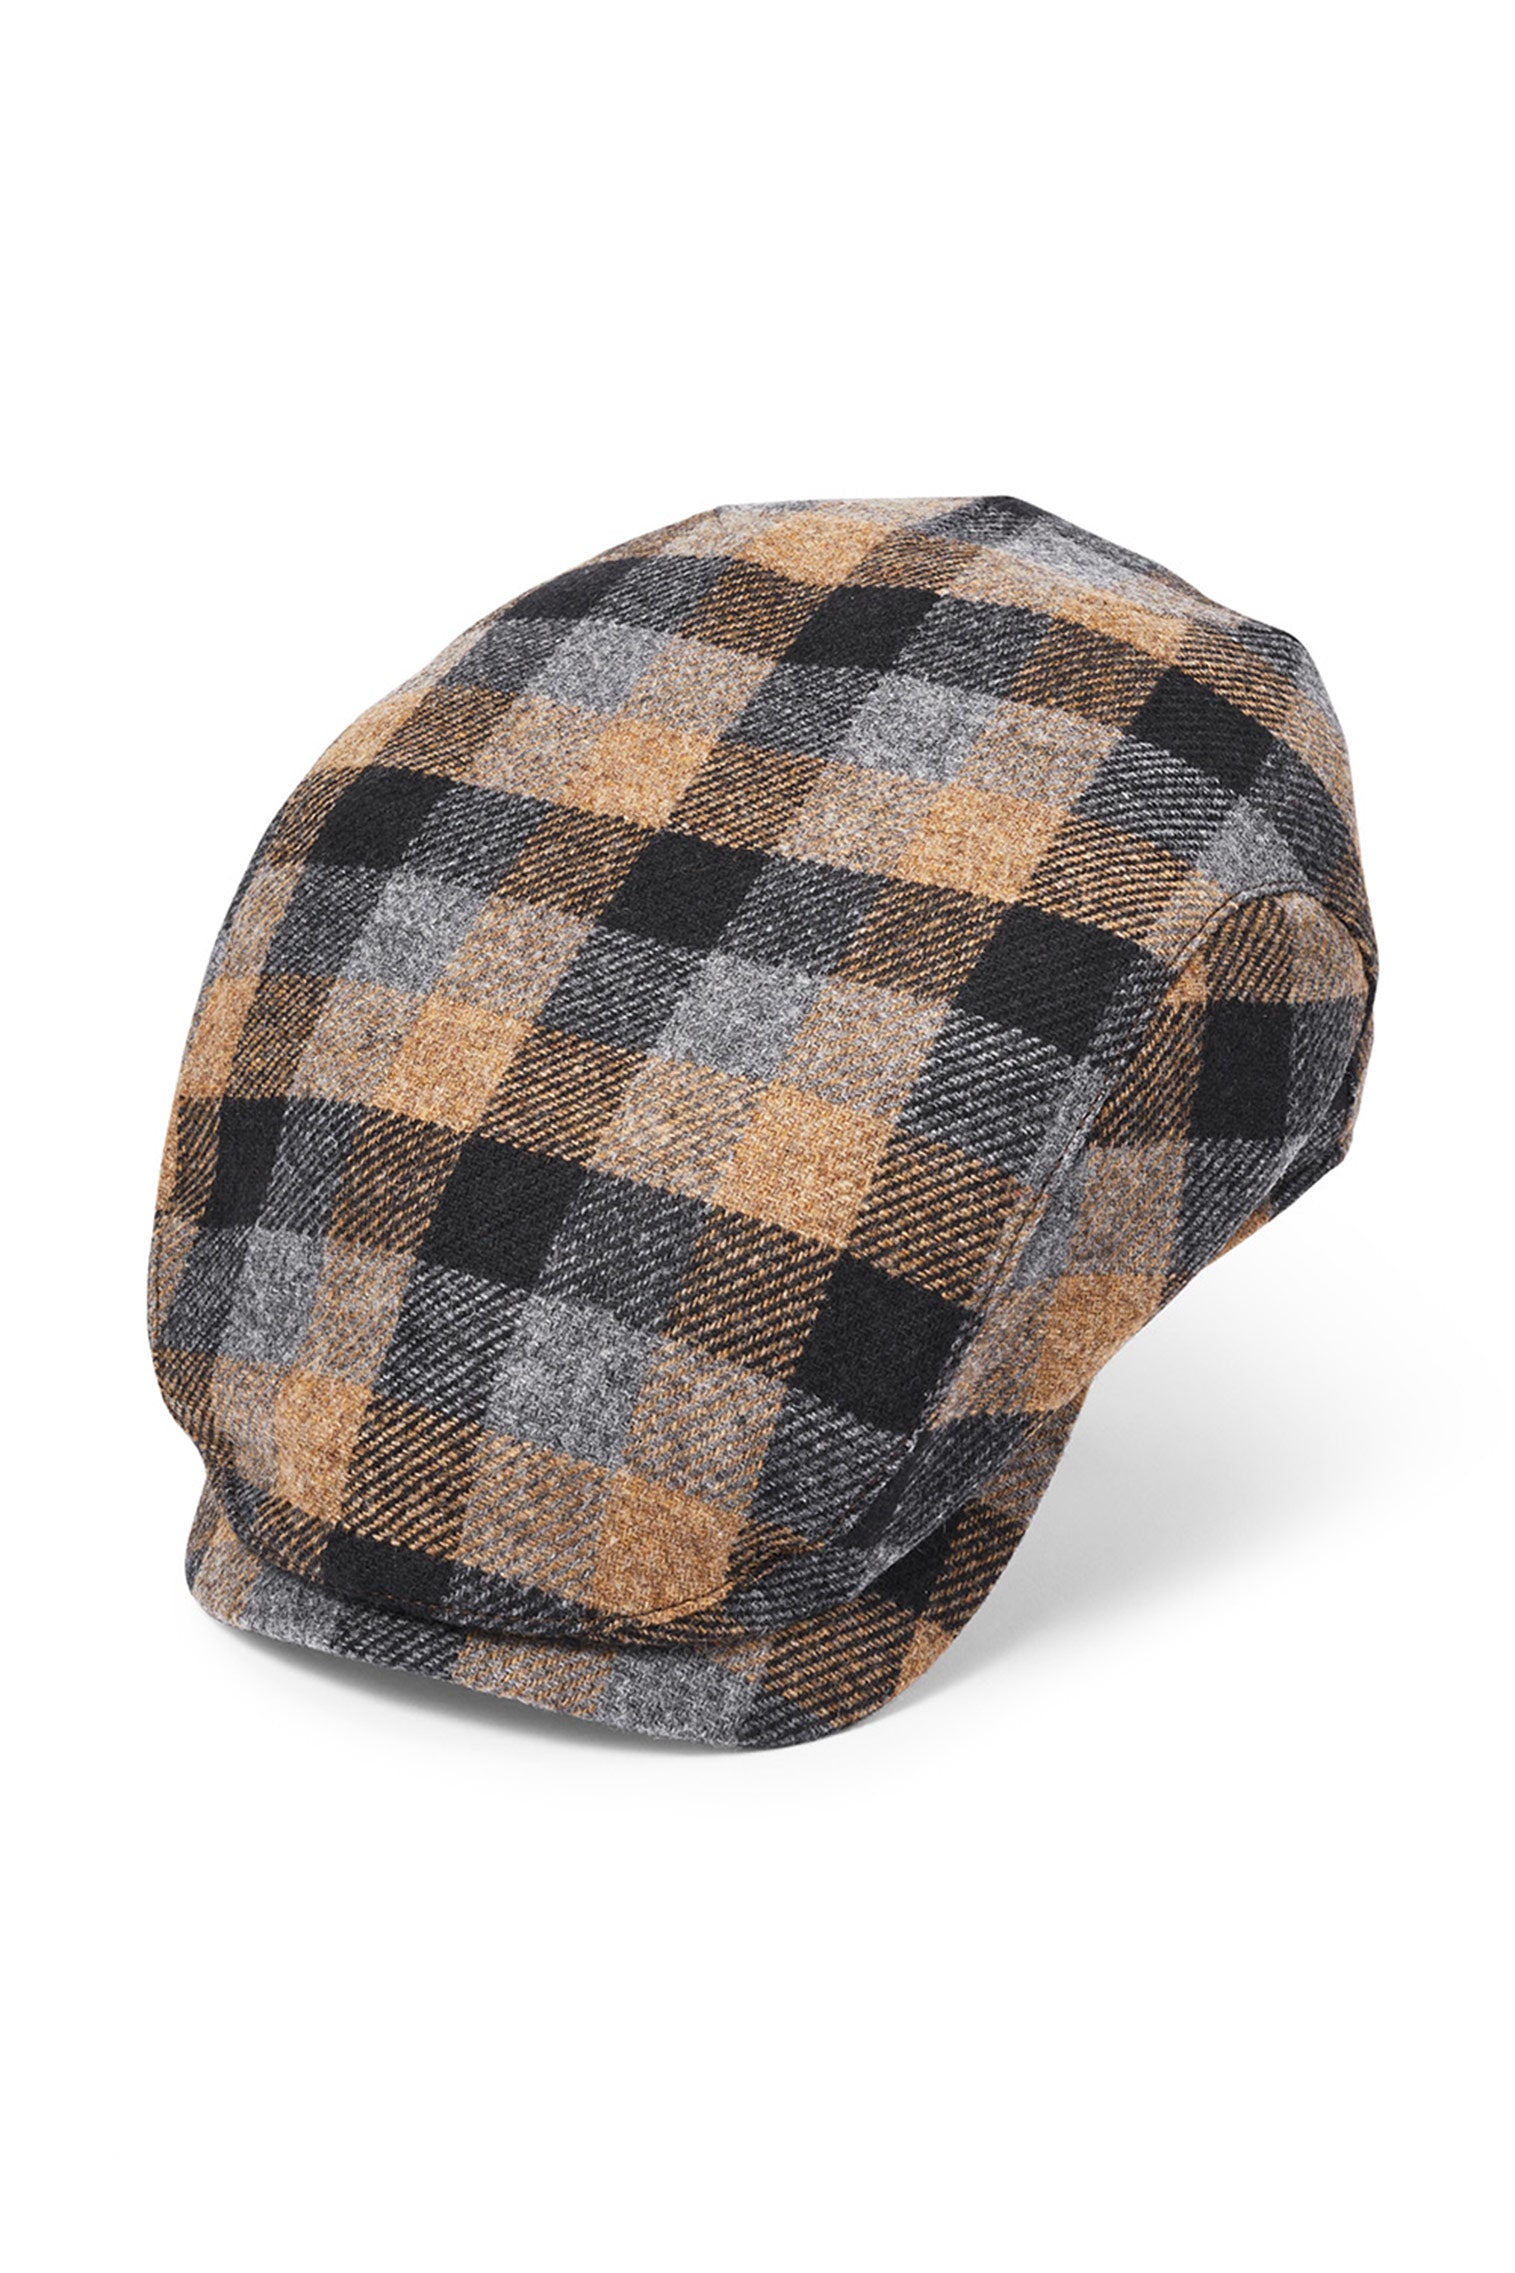 Lynton Beige Flat Cap - Men's Hats - Lock & Co. Hatters London UK